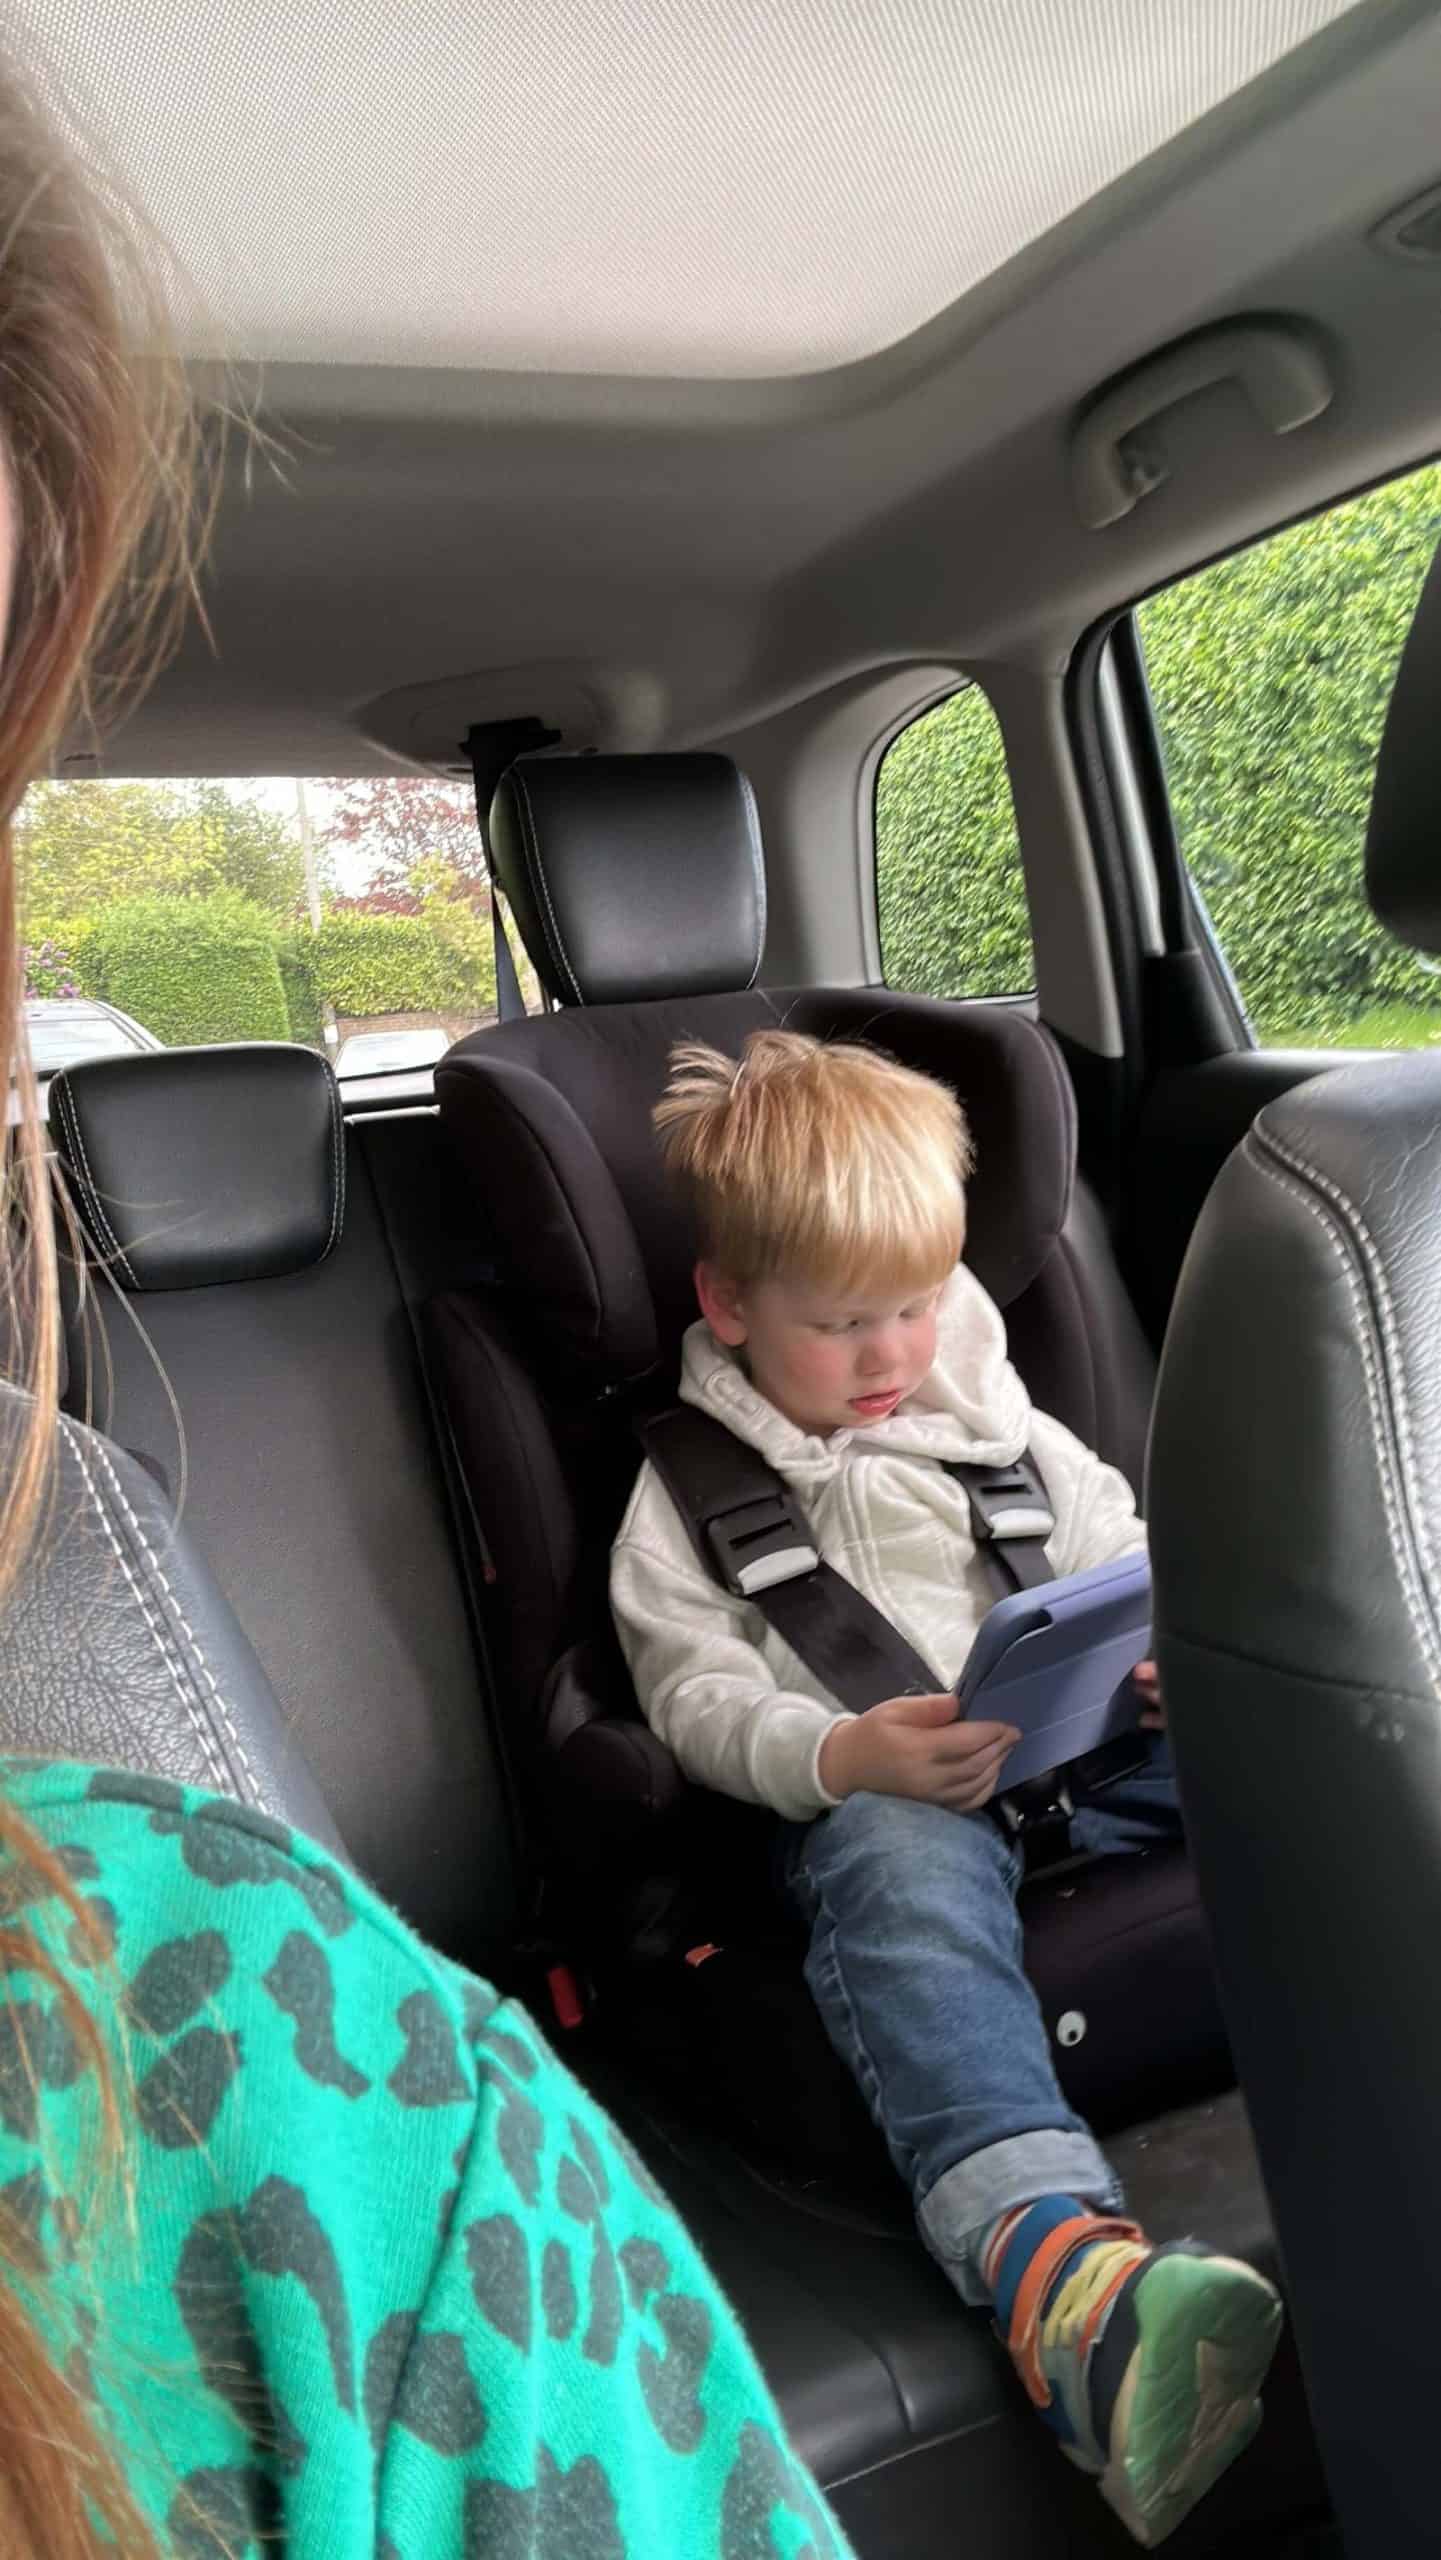 Toddler sat in car seat in back of car